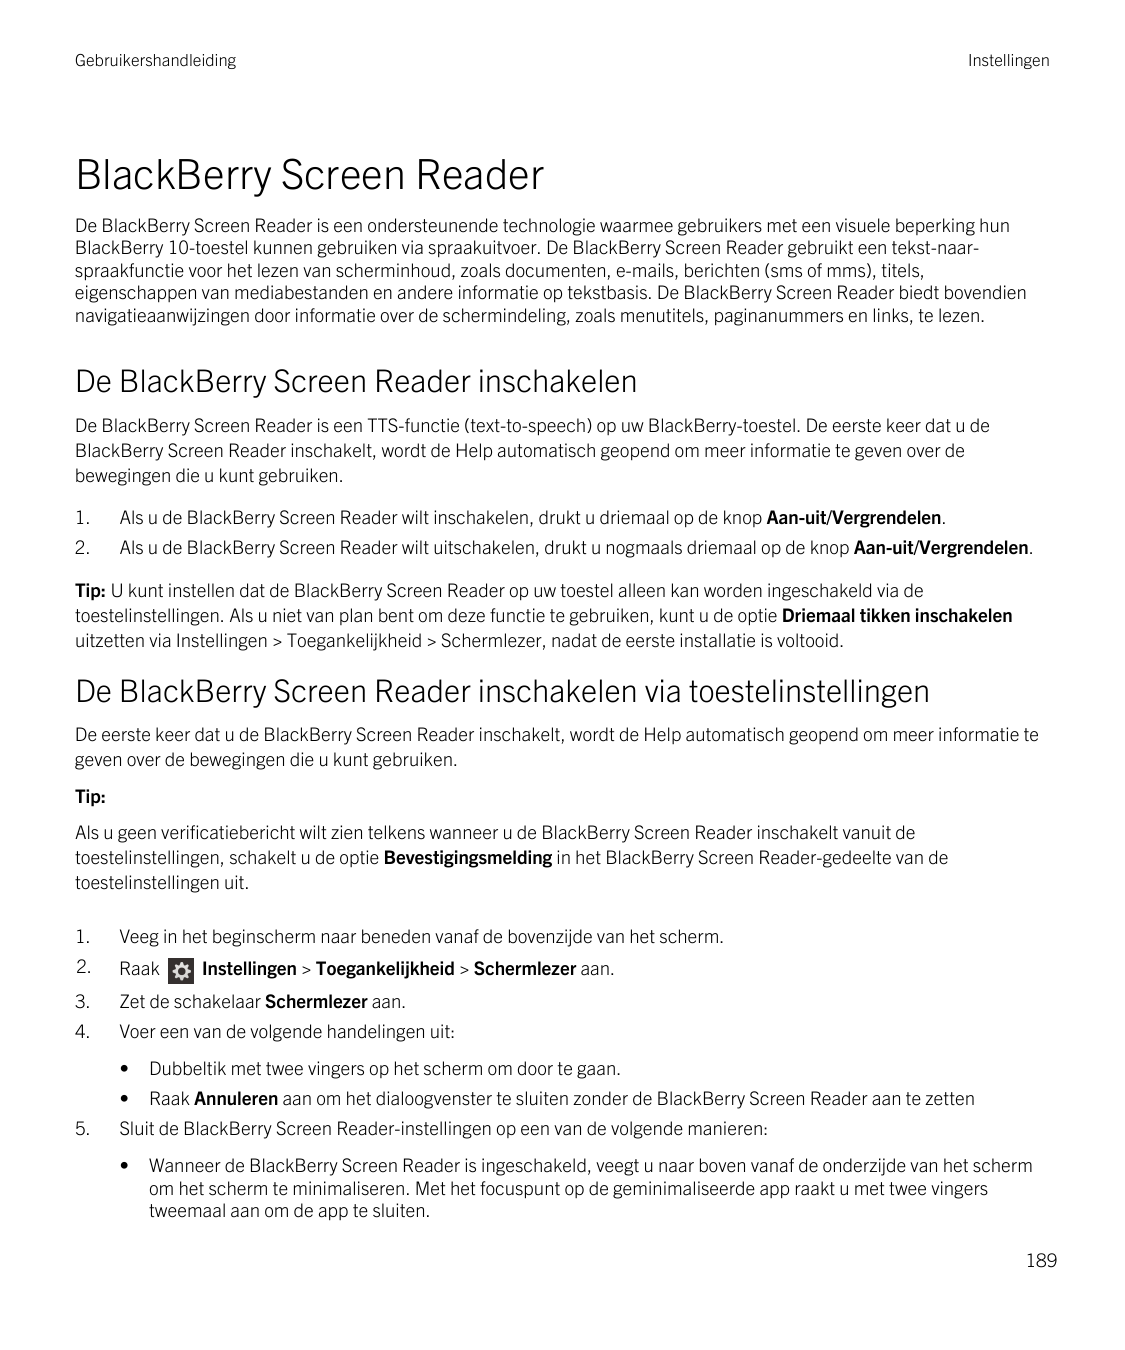 GebruikershandleidingInstellingenBlackBerry Screen ReaderDe BlackBerry Screen Reader is een ondersteunende technologie waarmee g